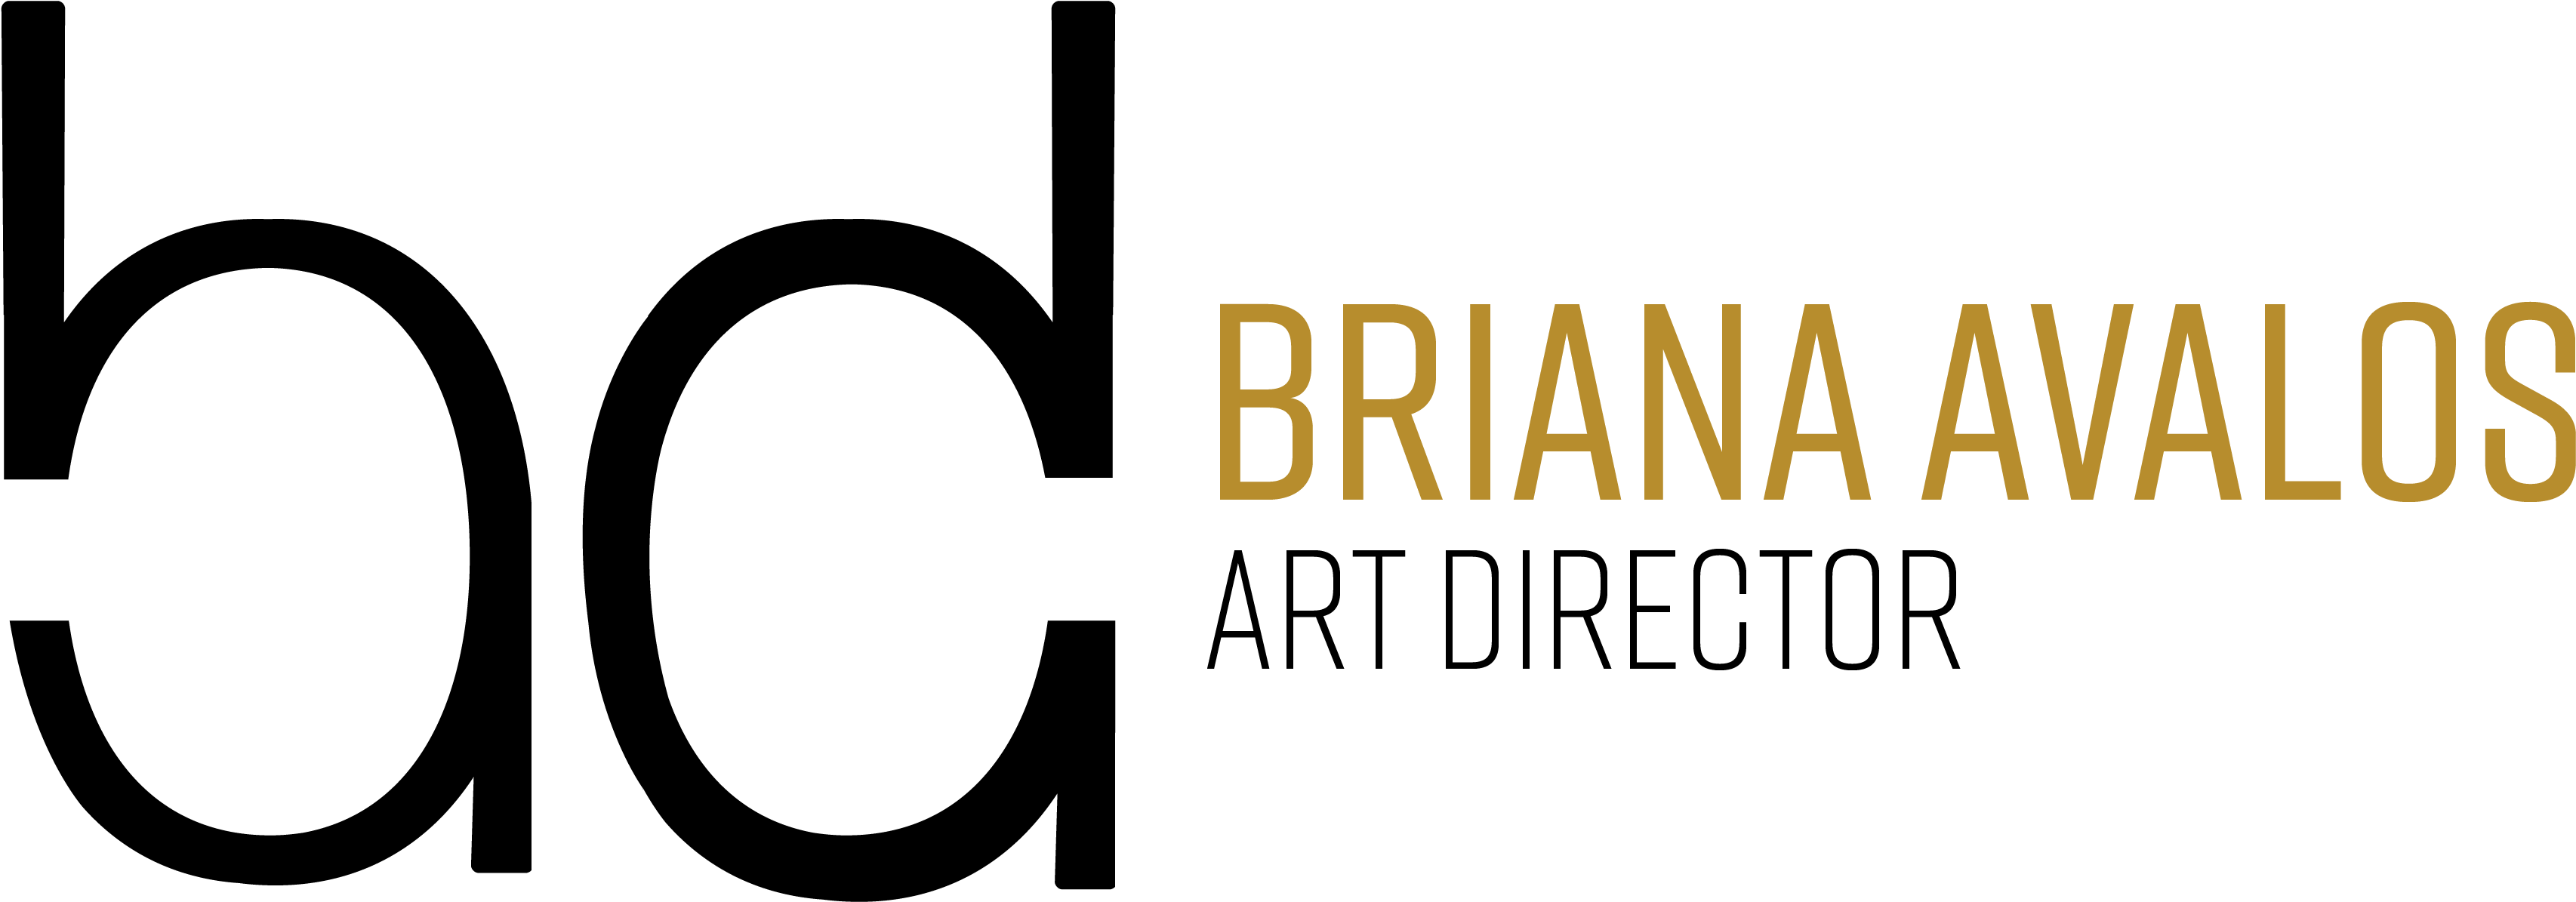 Briana Avalos - Circle Clipart (3600x1500), Png Download